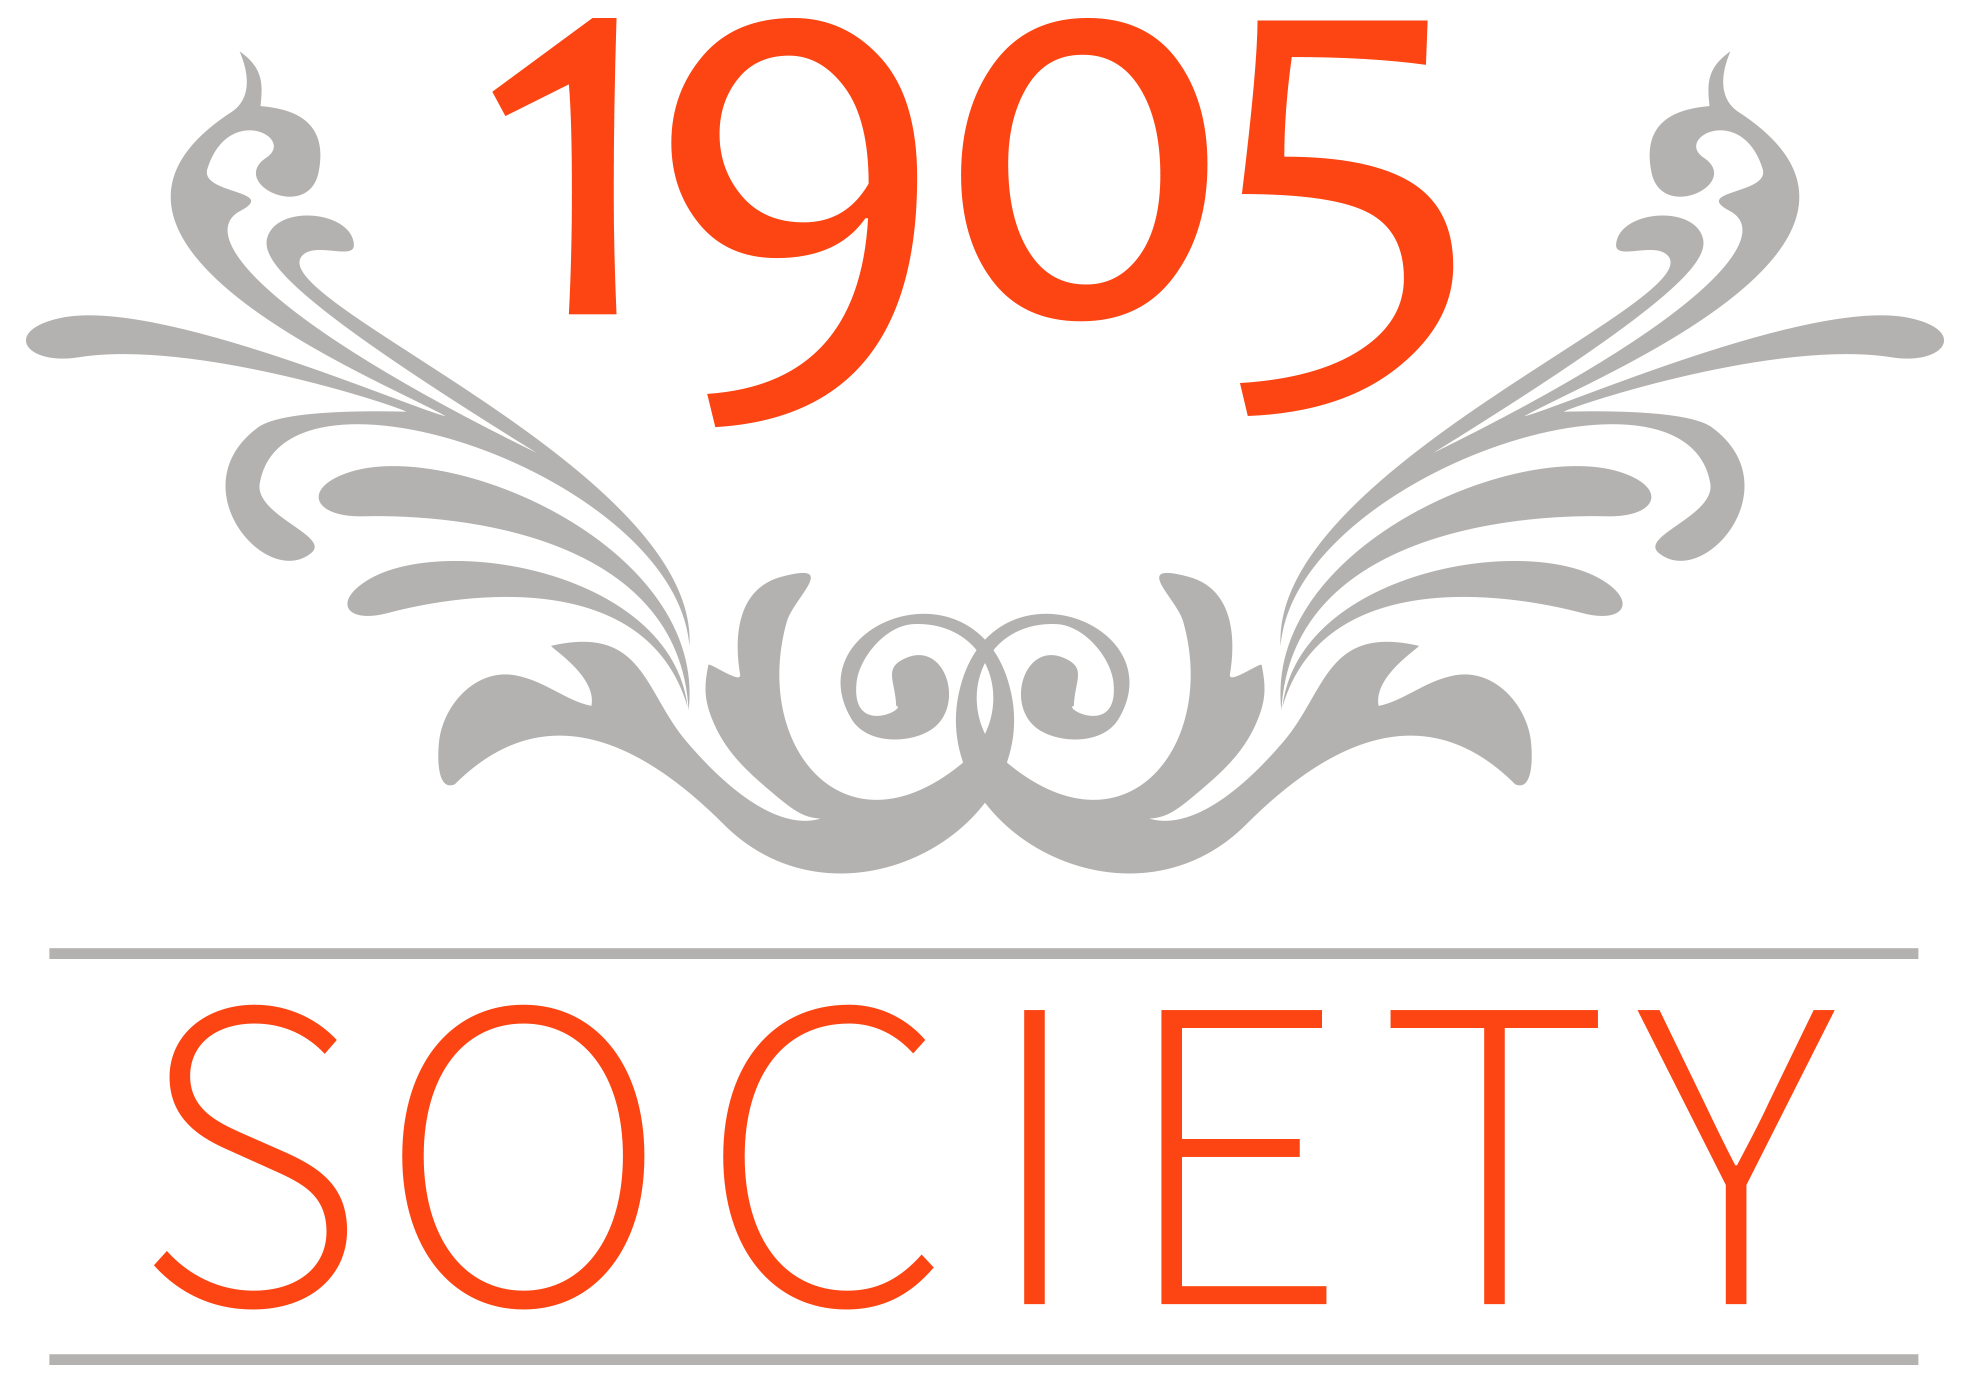 1905 Society logo (2).png